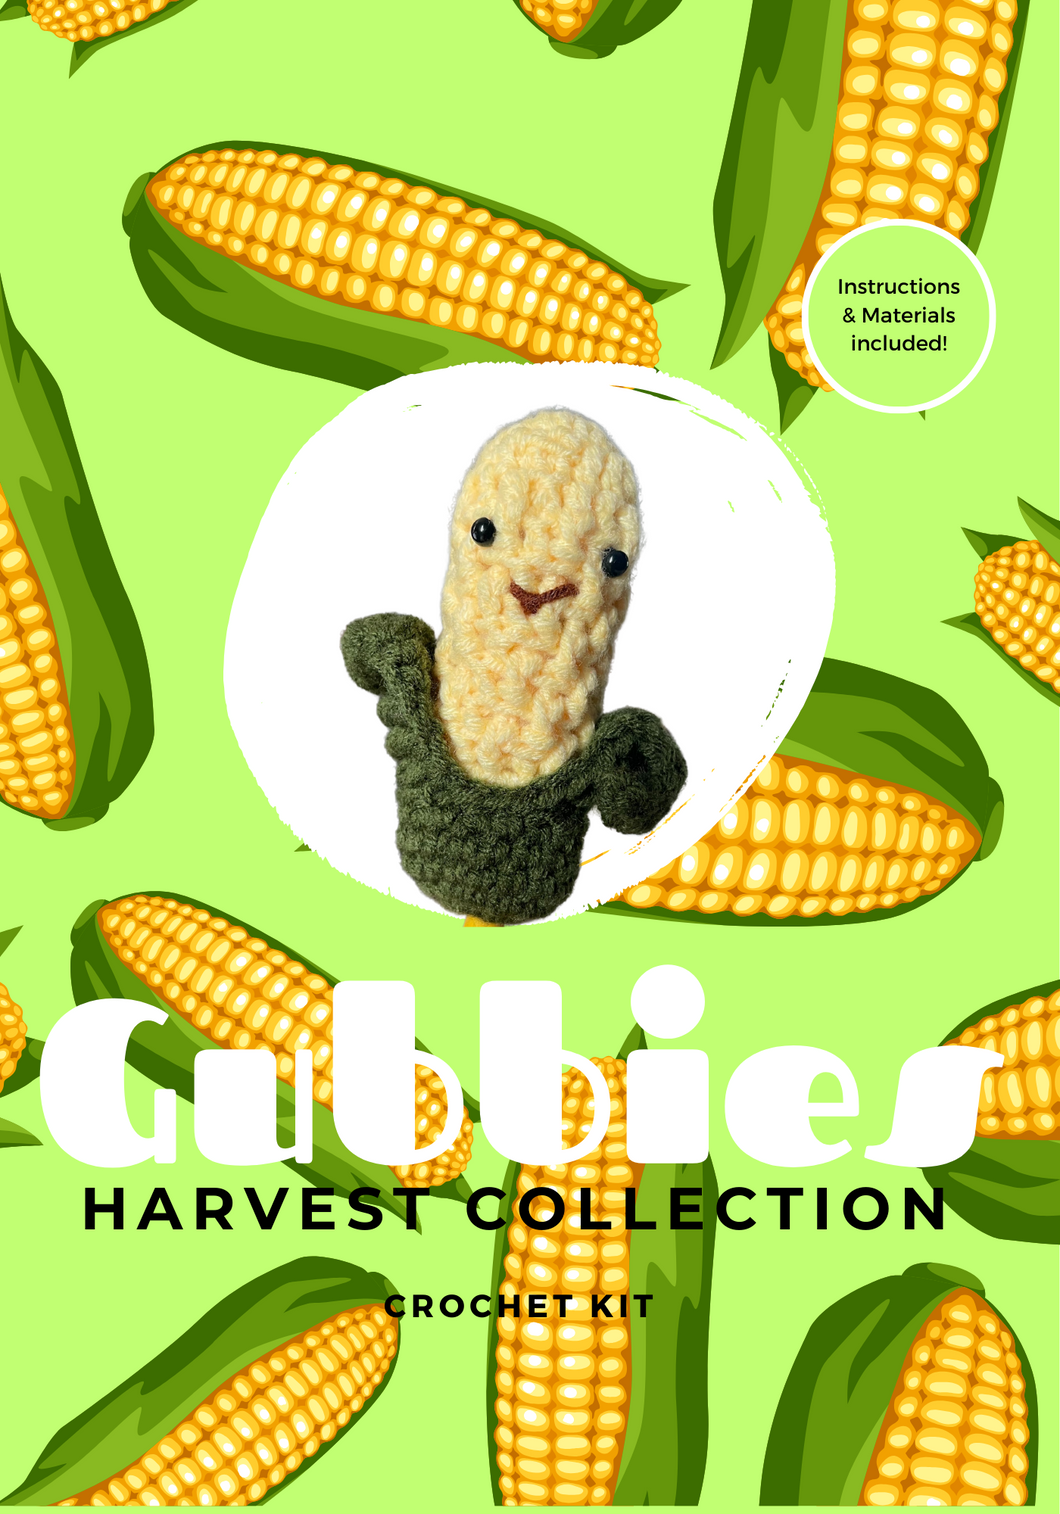 Gubbies: Corn